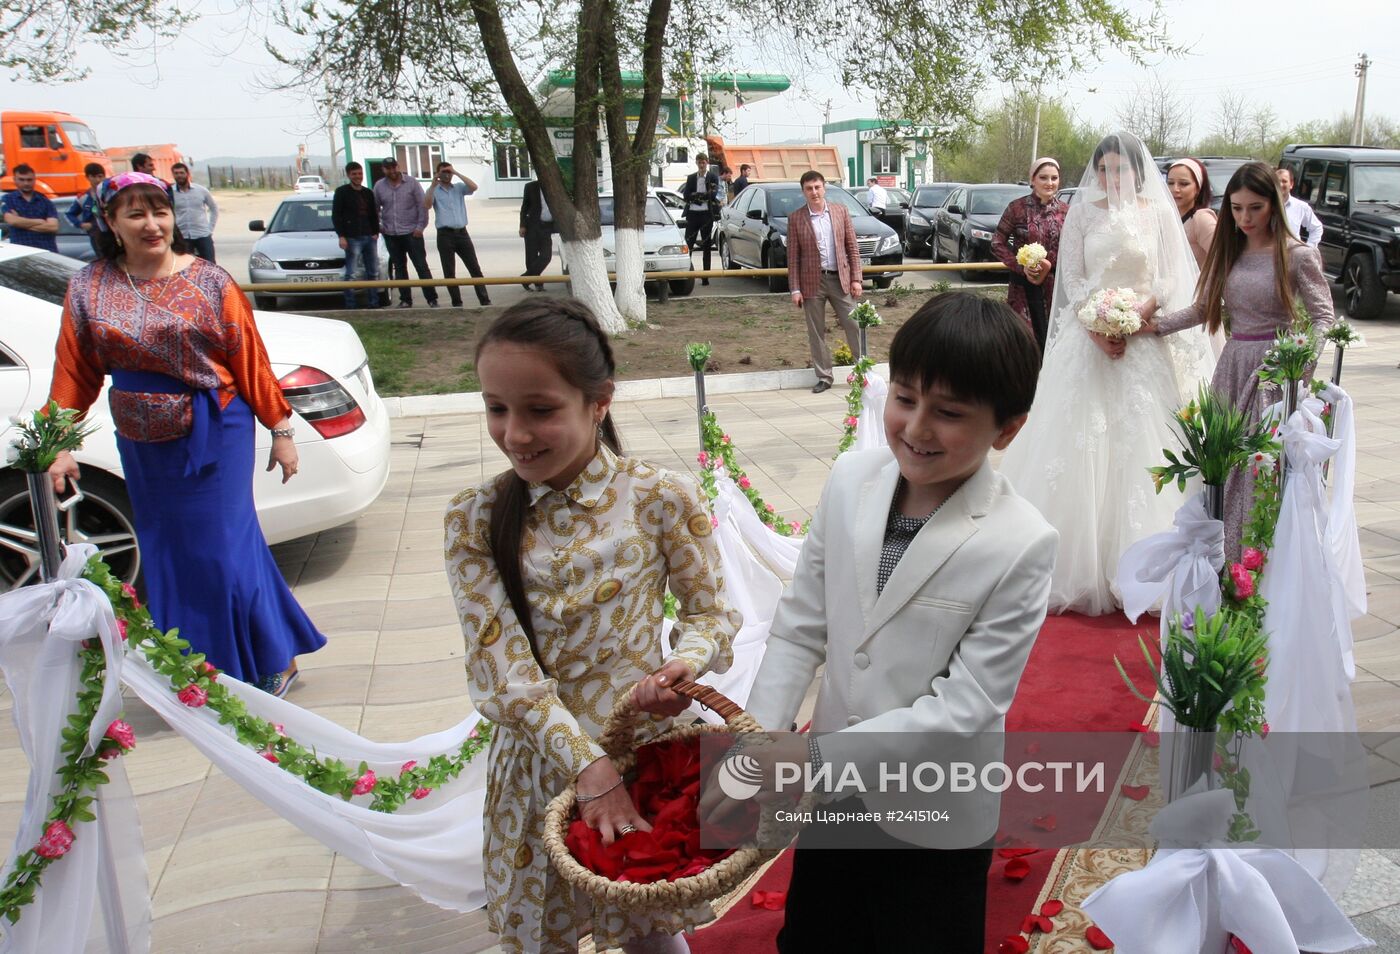 Традиционная чеченская свадьба в Грозном